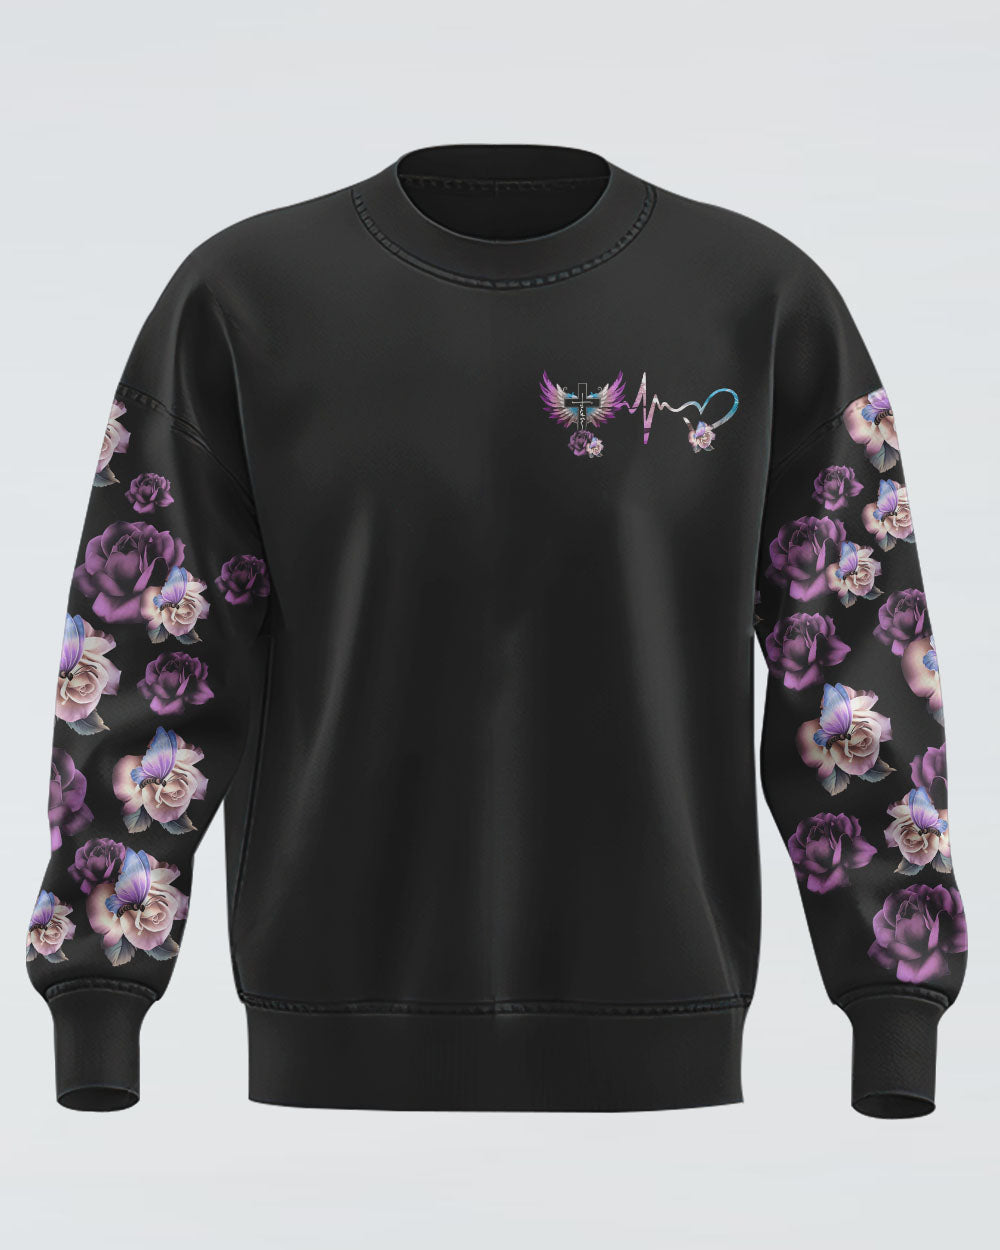 Floral Rose Butterfly Wings Women's Christian Sweatshirt